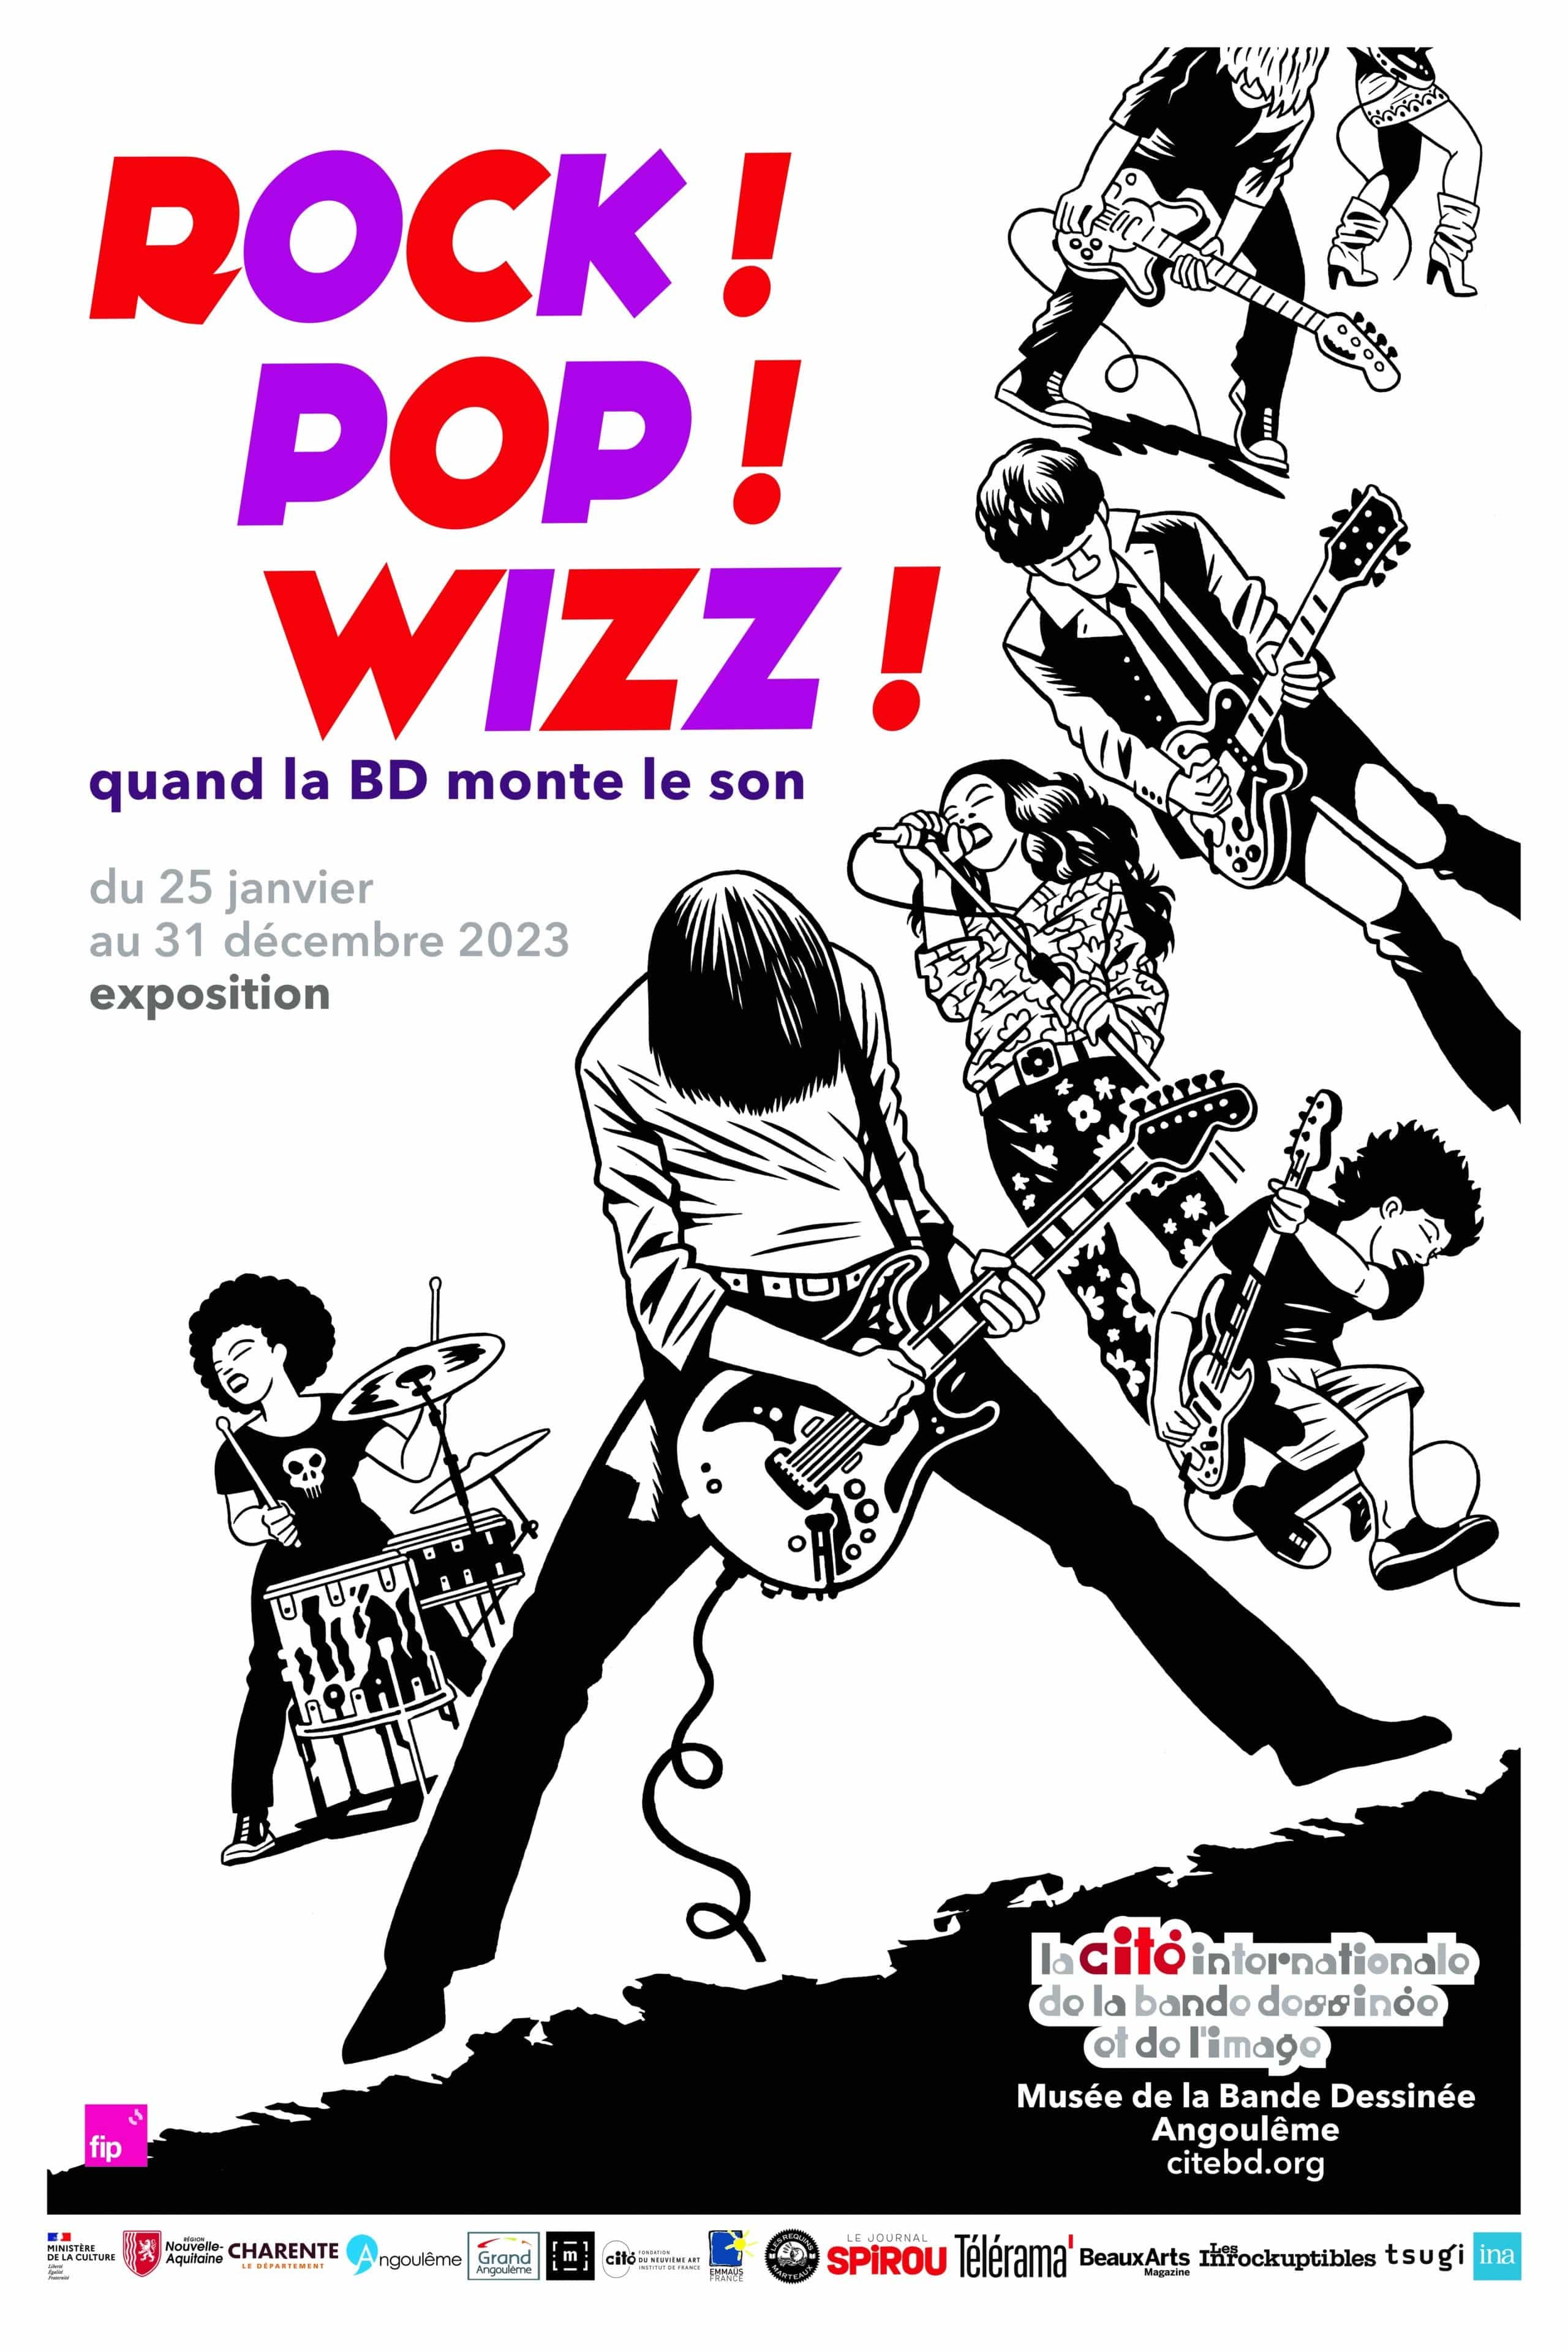 Boulogne : une école du rap français - Pop - Rock - Hard rock - Livre  Musique